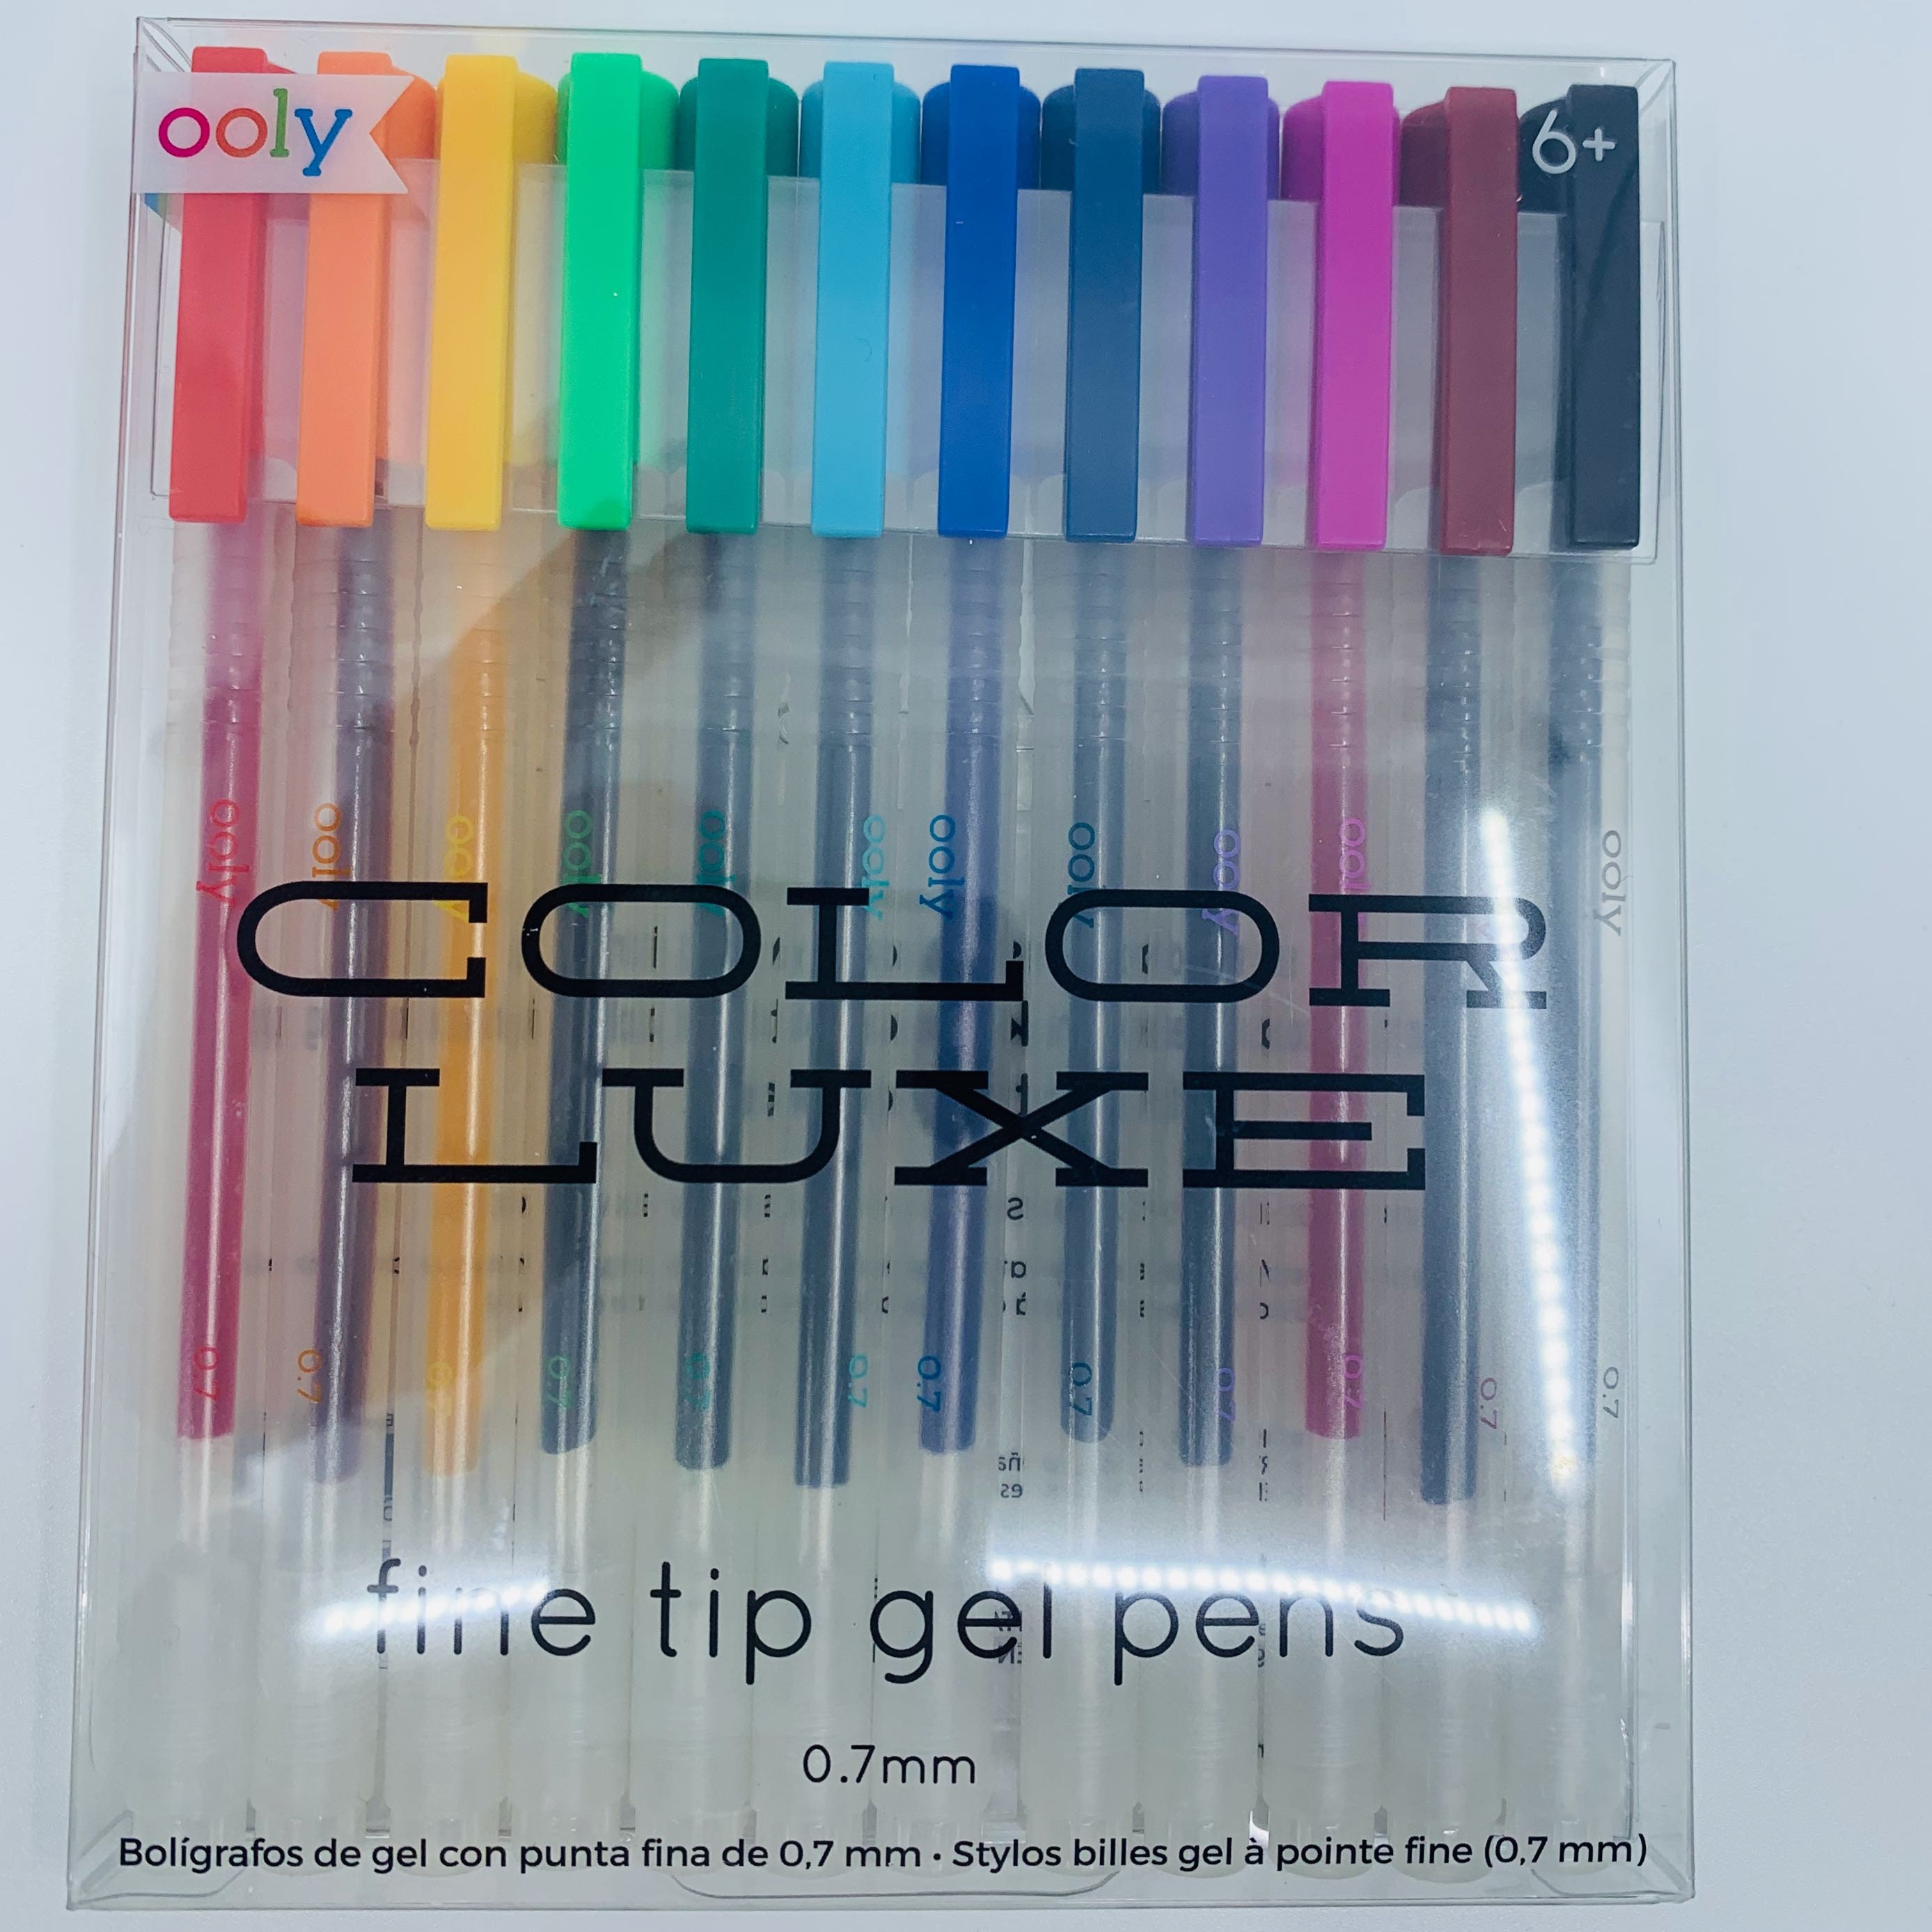 Paper Mate InkJoy Gel Pens 0.7mm - Set of 14 - Planner Pens, Gel Pens,  Stationery